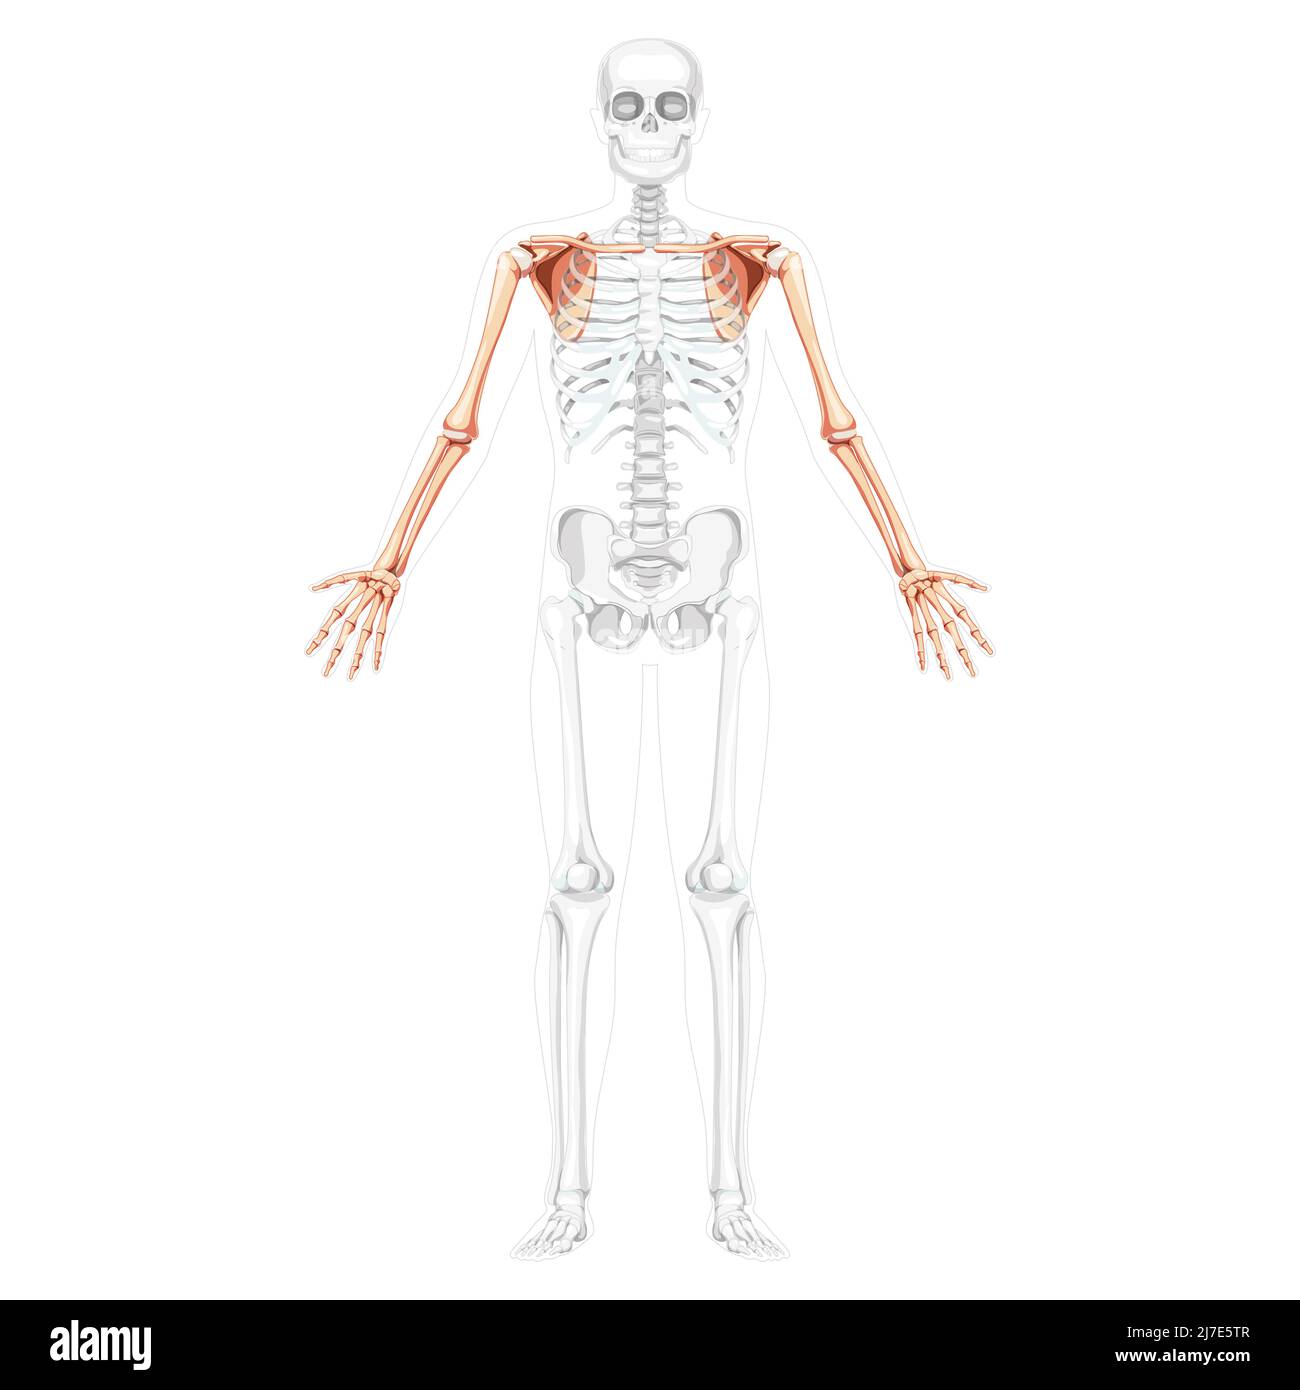 Skelett obere Extremitäten Arme mit Schultergurt menschliche Vorderansicht mit zwei Armhaltungen mit transparenter Knochenposition. Unterarme realistisch flach Vektor-Illustration der Anatomie isoliert auf weißem Hintergrund Stock Vektor